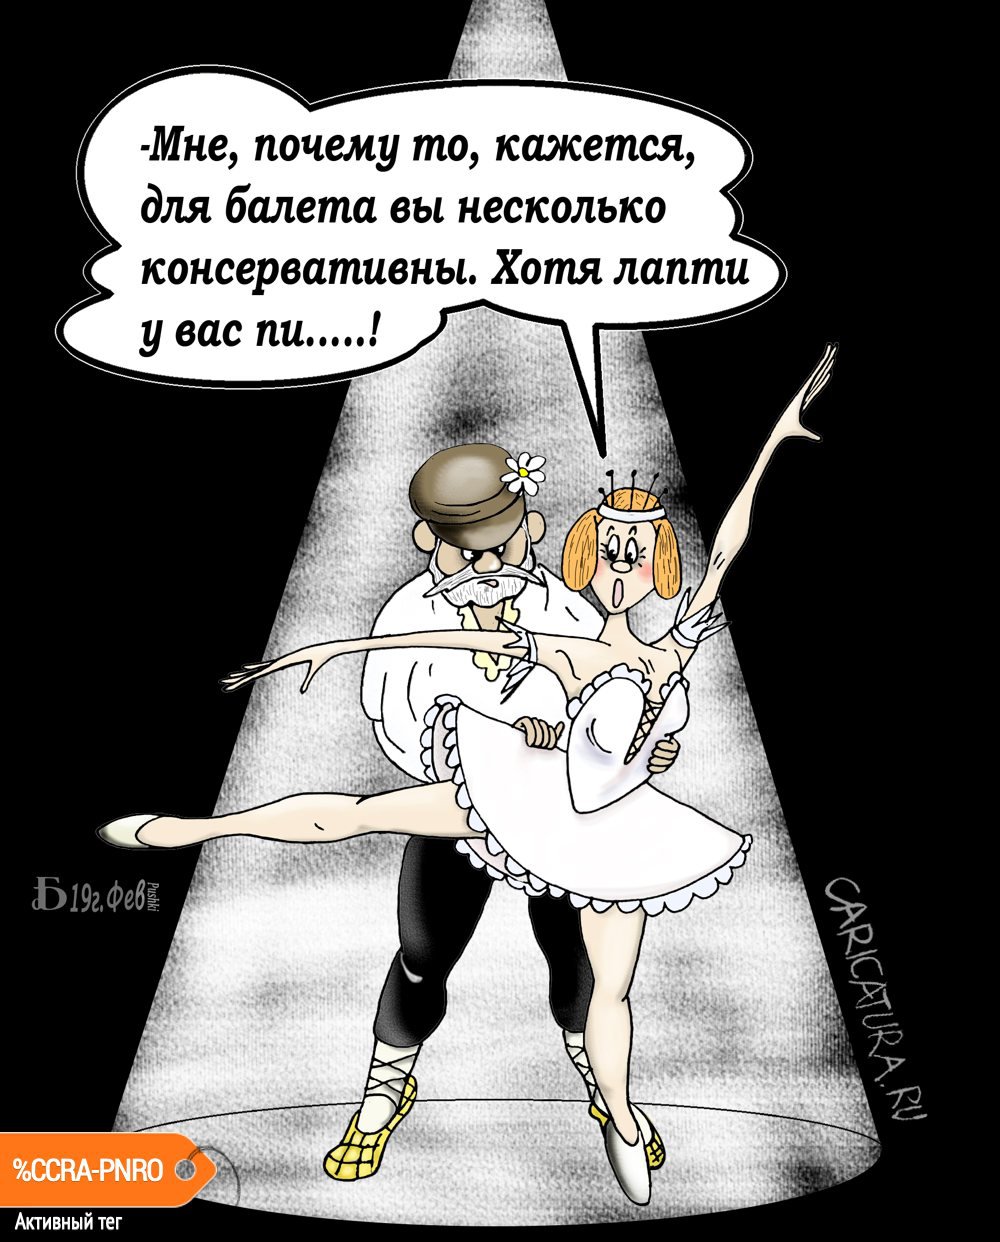 Карикатура "Про лапти", Борис Демин